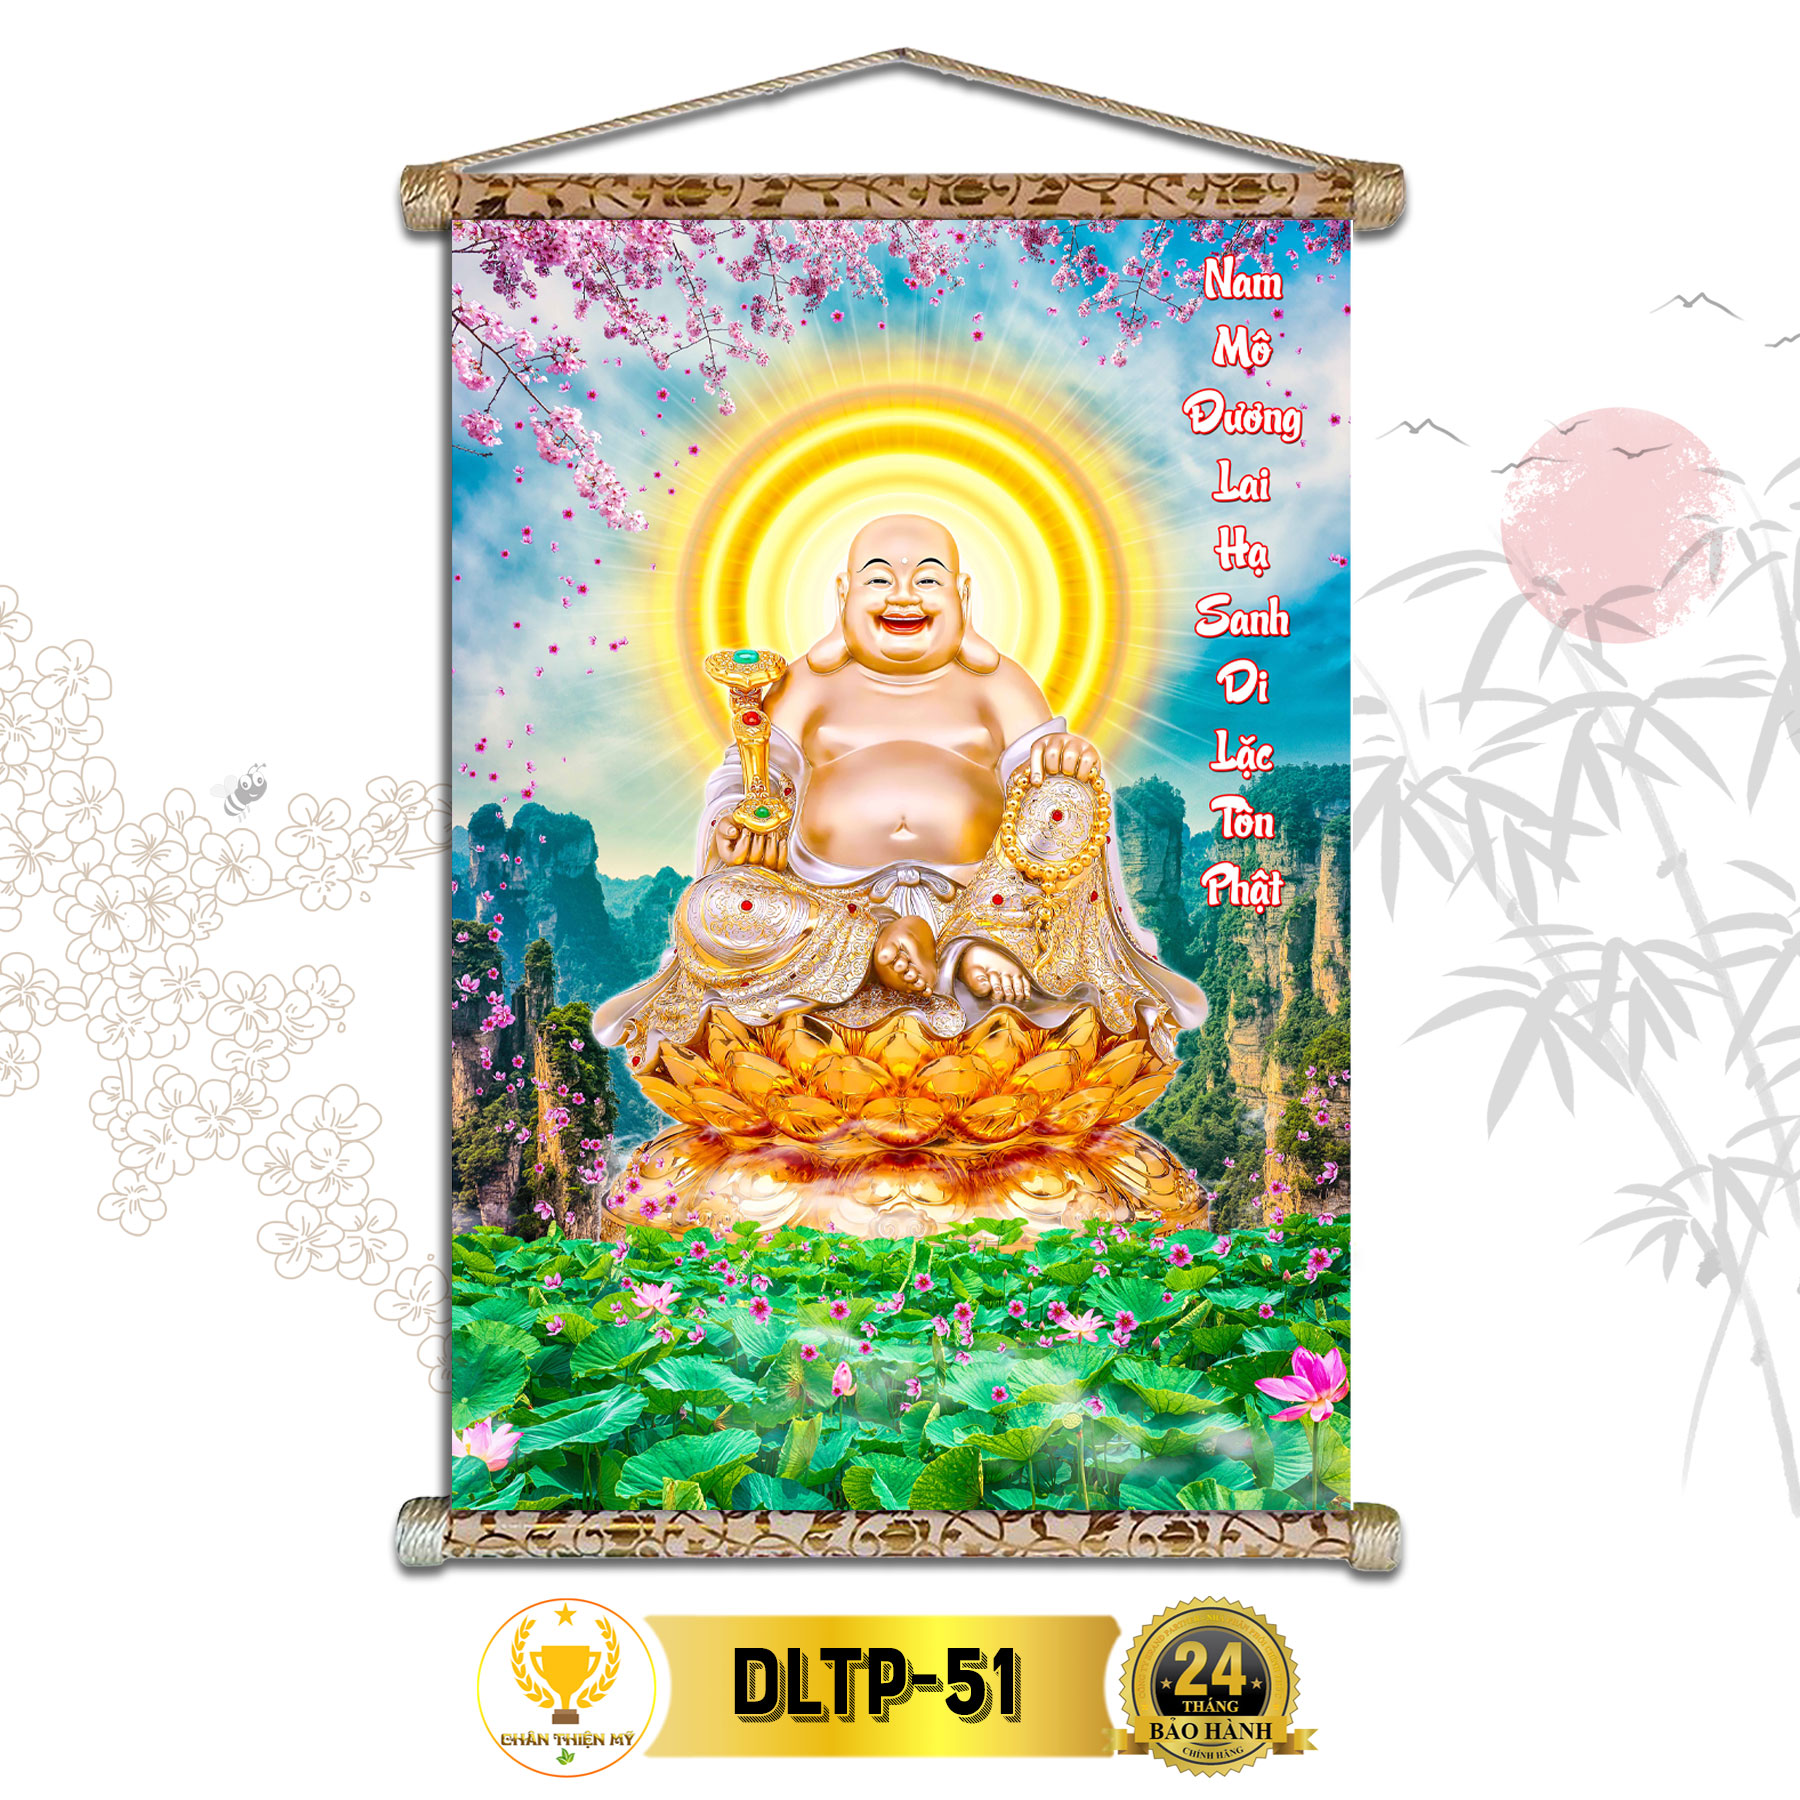 Tranh Phật Treo Tường Phật Di Lặc CHÂN THIỆN MỸ Chất Liệu Vải Lụa Kim Sa Khung Gỗ 40x60cm DLTP-51